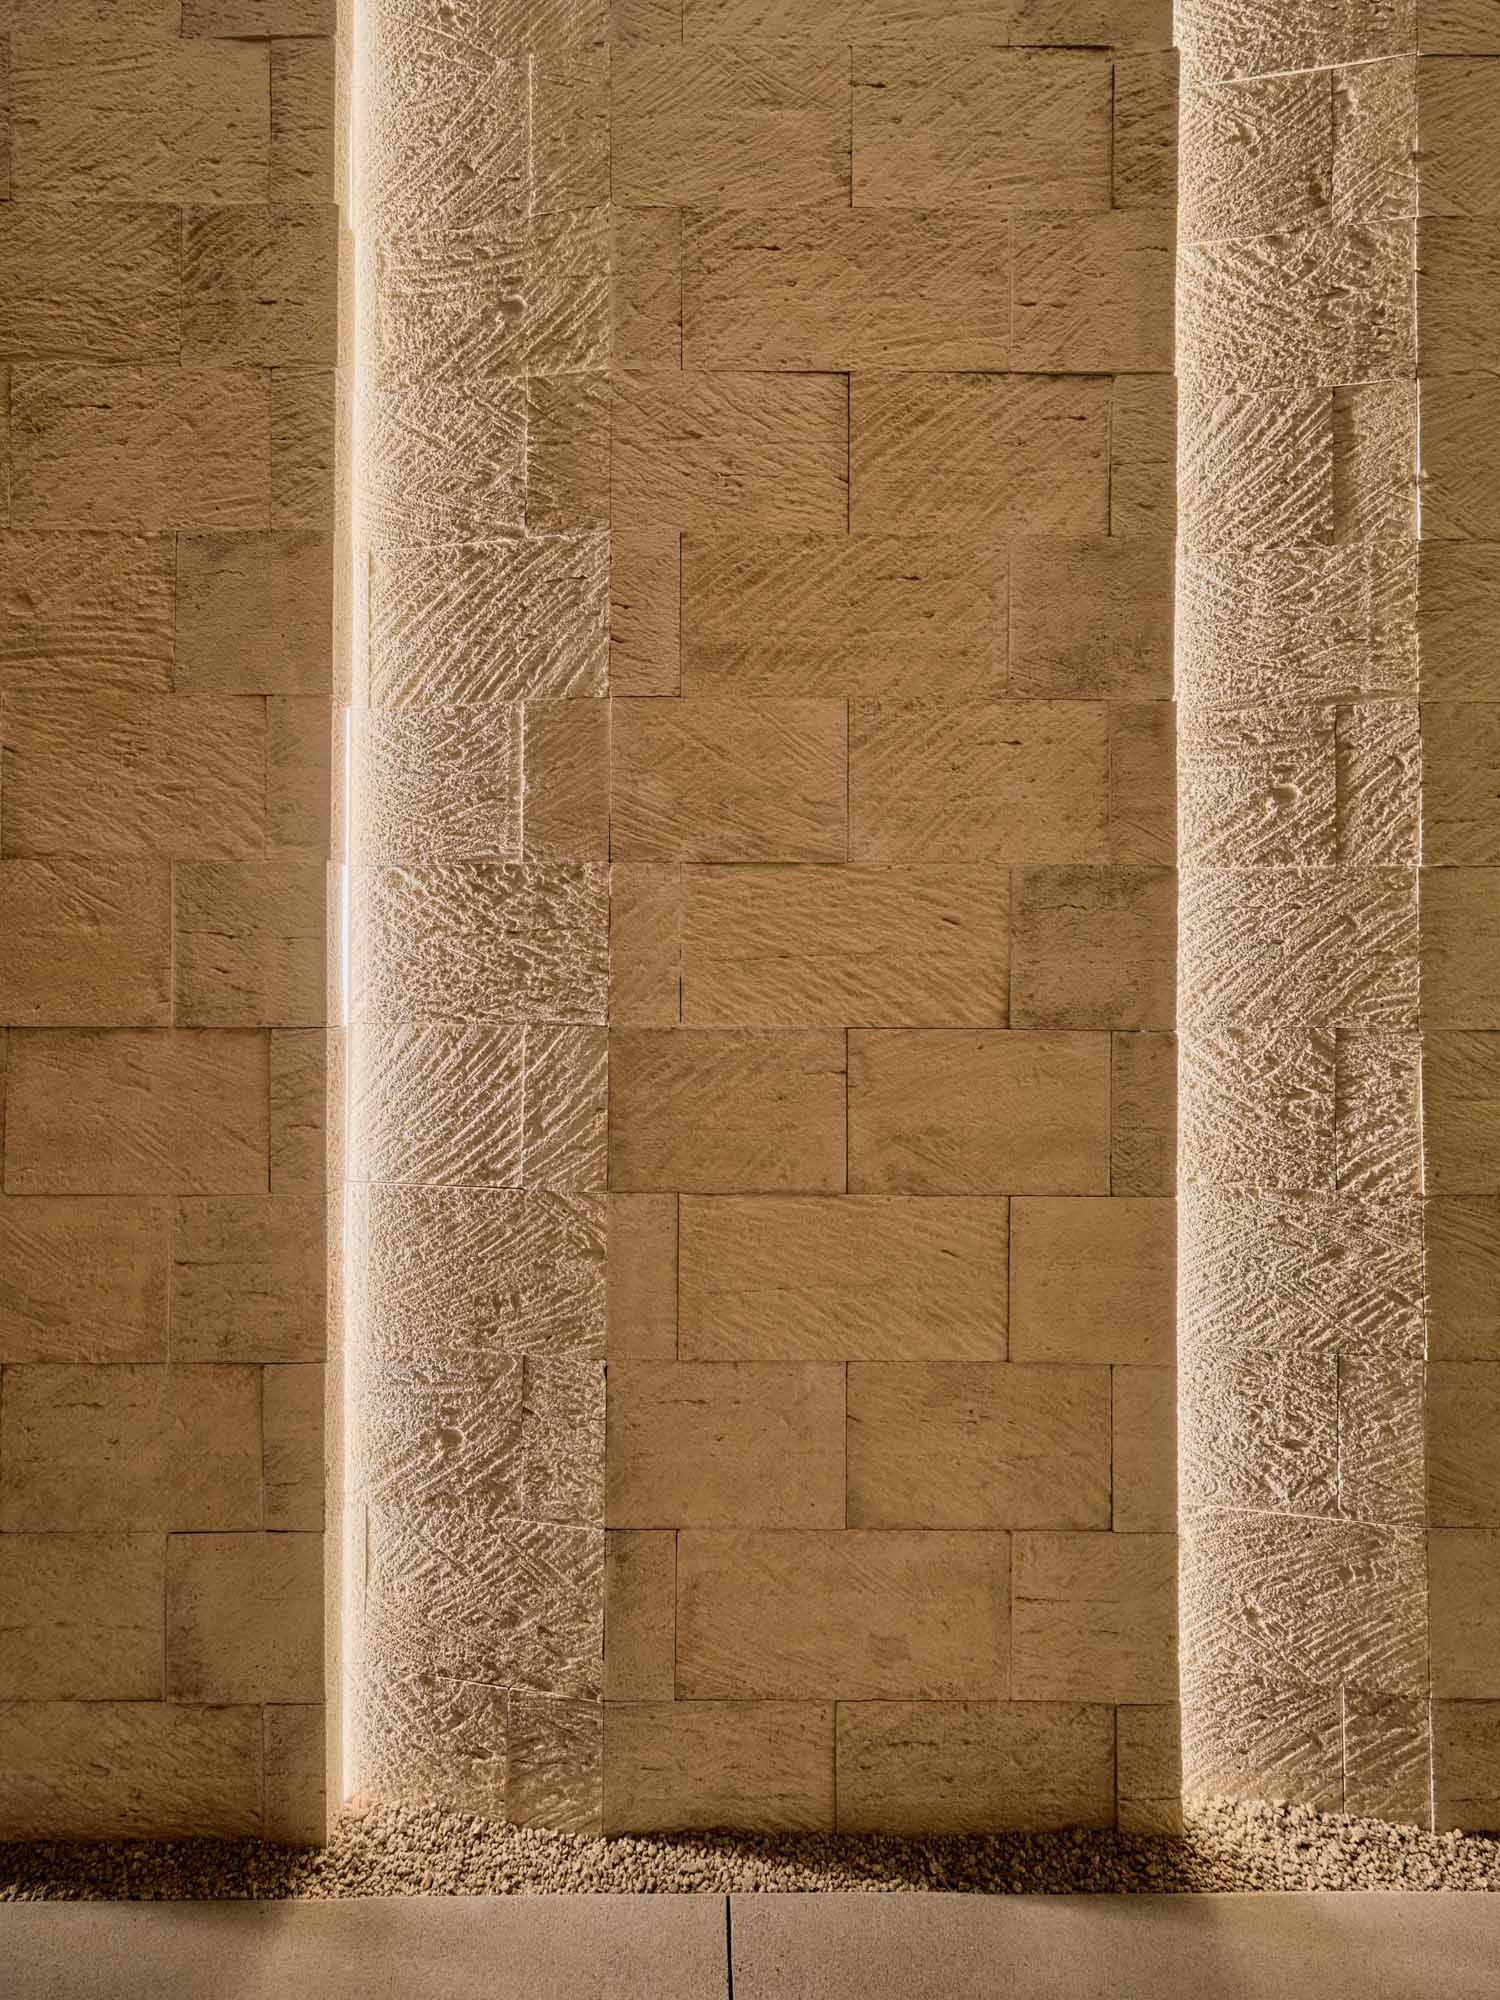 Iluminatul a fost inclus între pereții de piatră de la intrarea acestei case moderne din deșert.